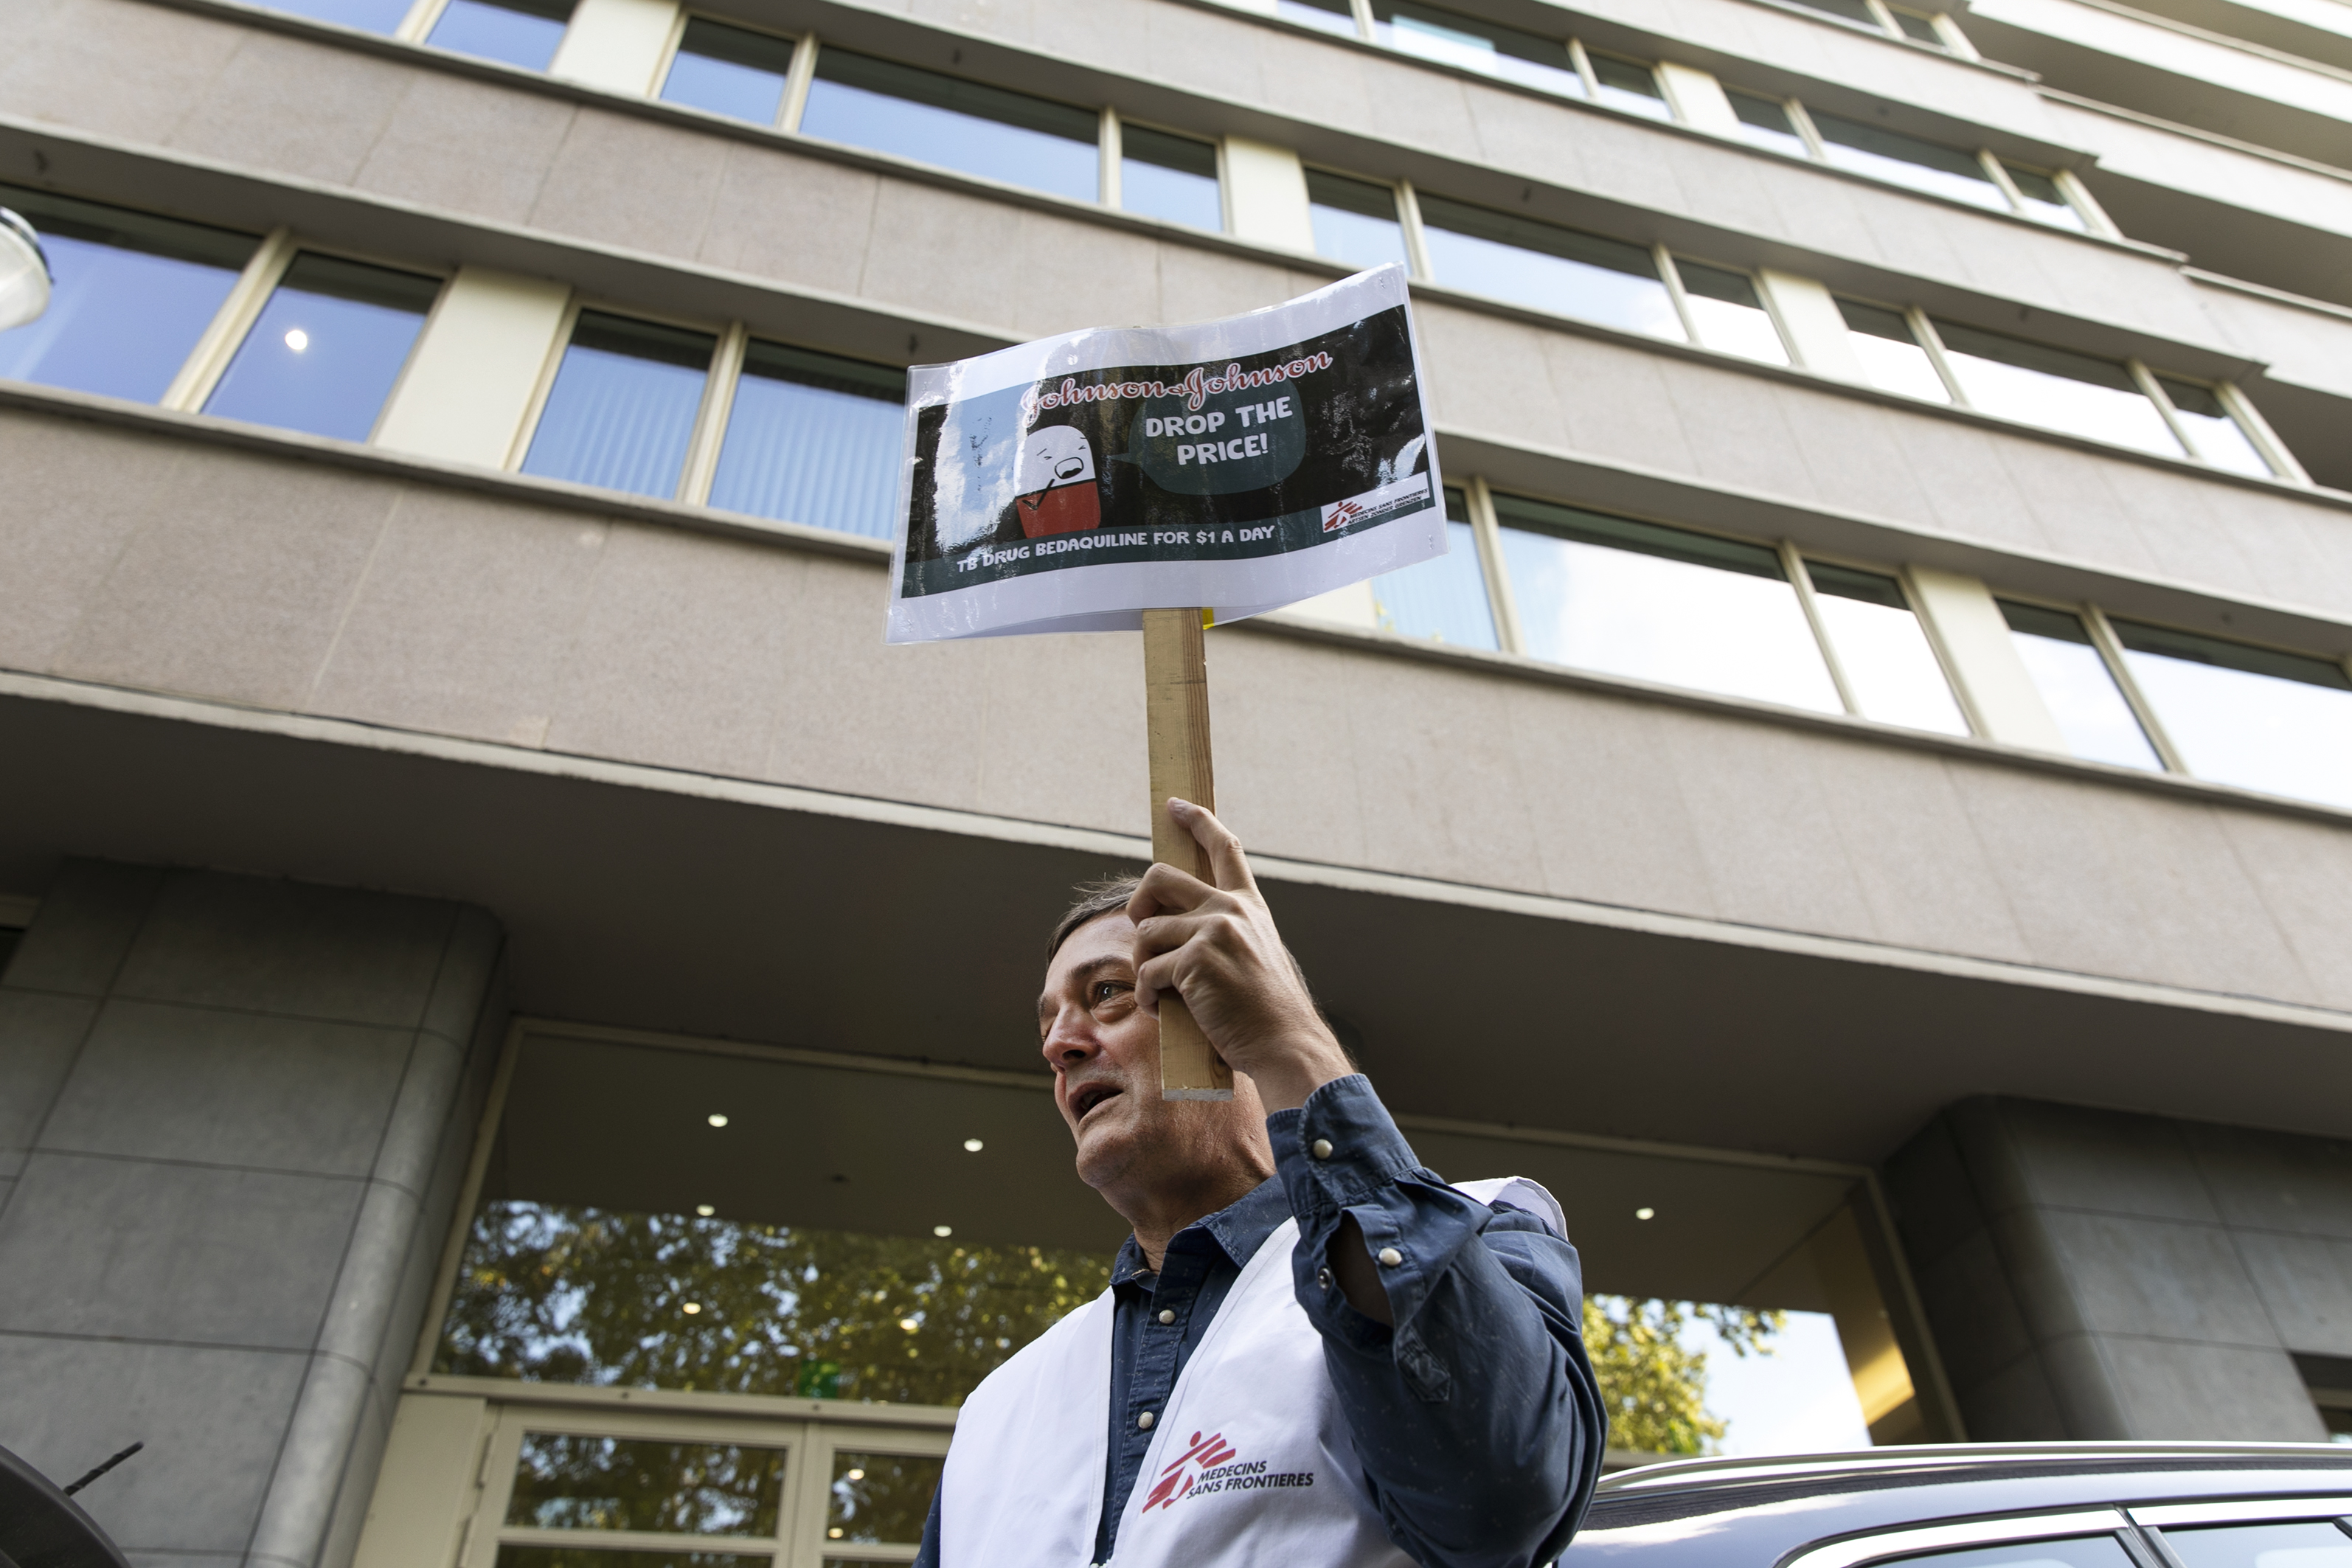 Manifestation devant le siège de Johnson & Johnson ce 10 octobre à Bruxelles